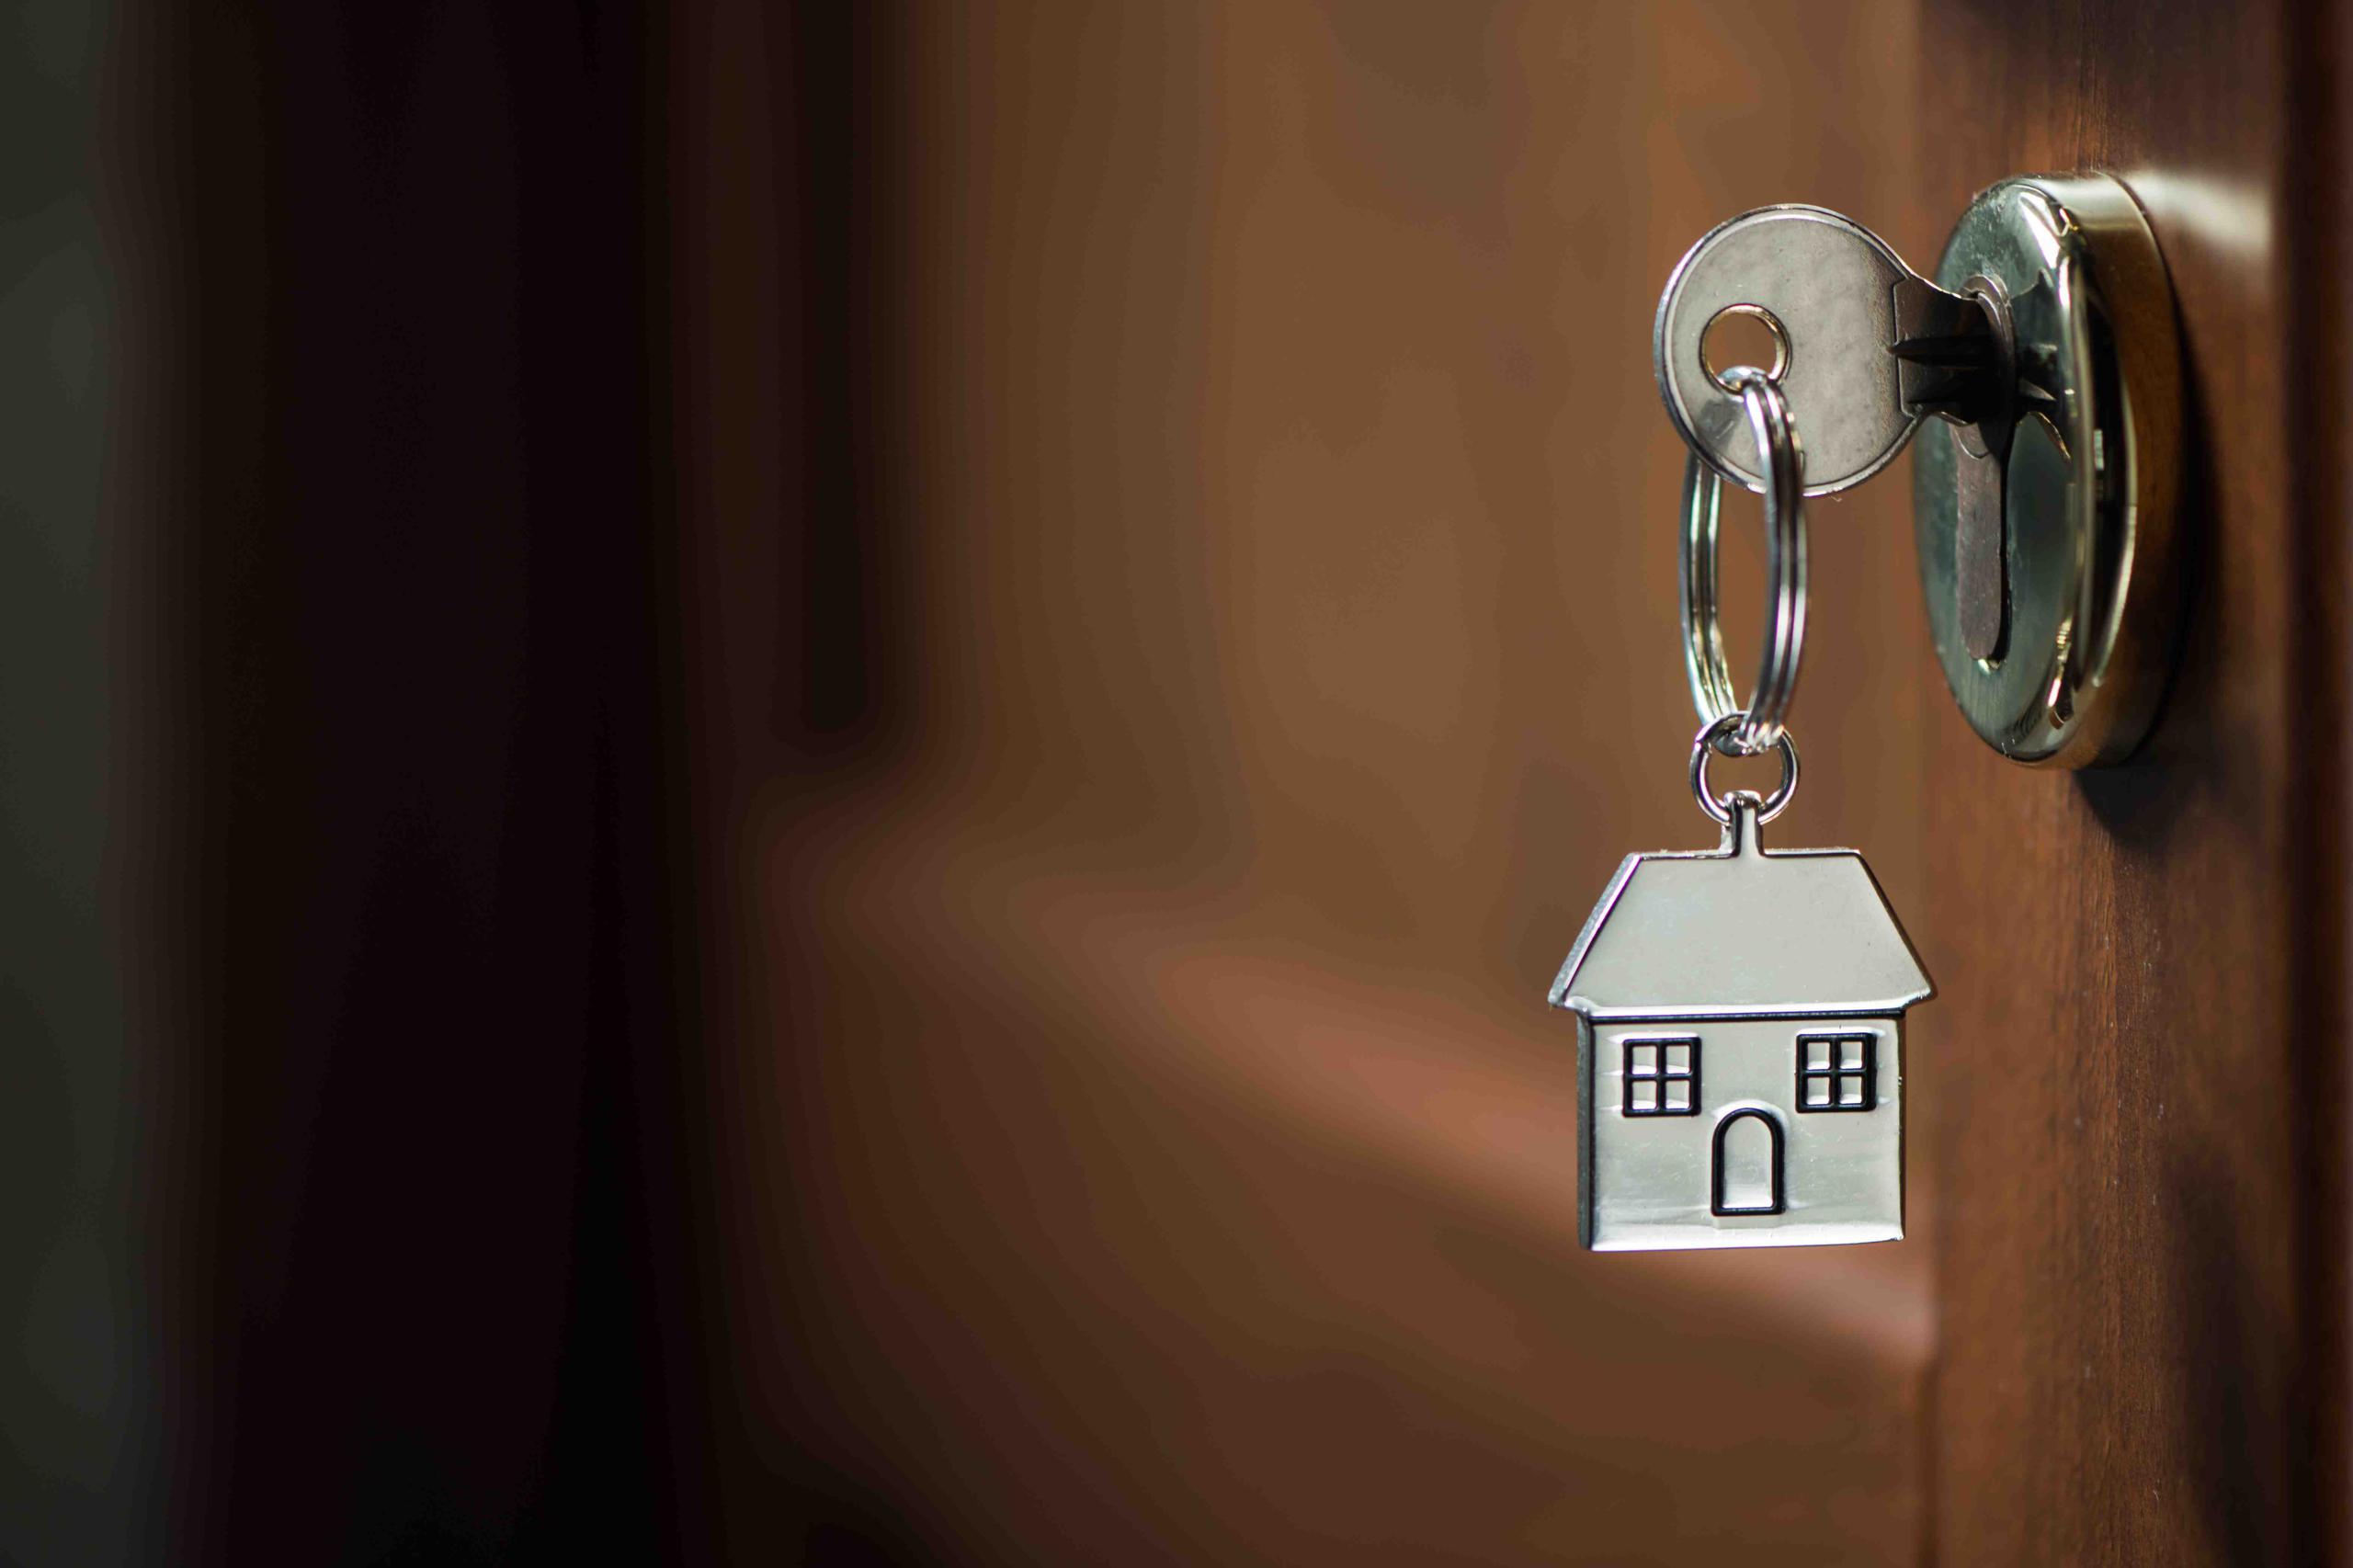 Aunque el alza reciente en las tasas de interés ha hecho que el refinaciamiento hipotecario sea una actividad menos rentable, la posibilidad de  aumentos adicionales a la tasa ha impulsado la compra de residencias. (Shuttersotck)